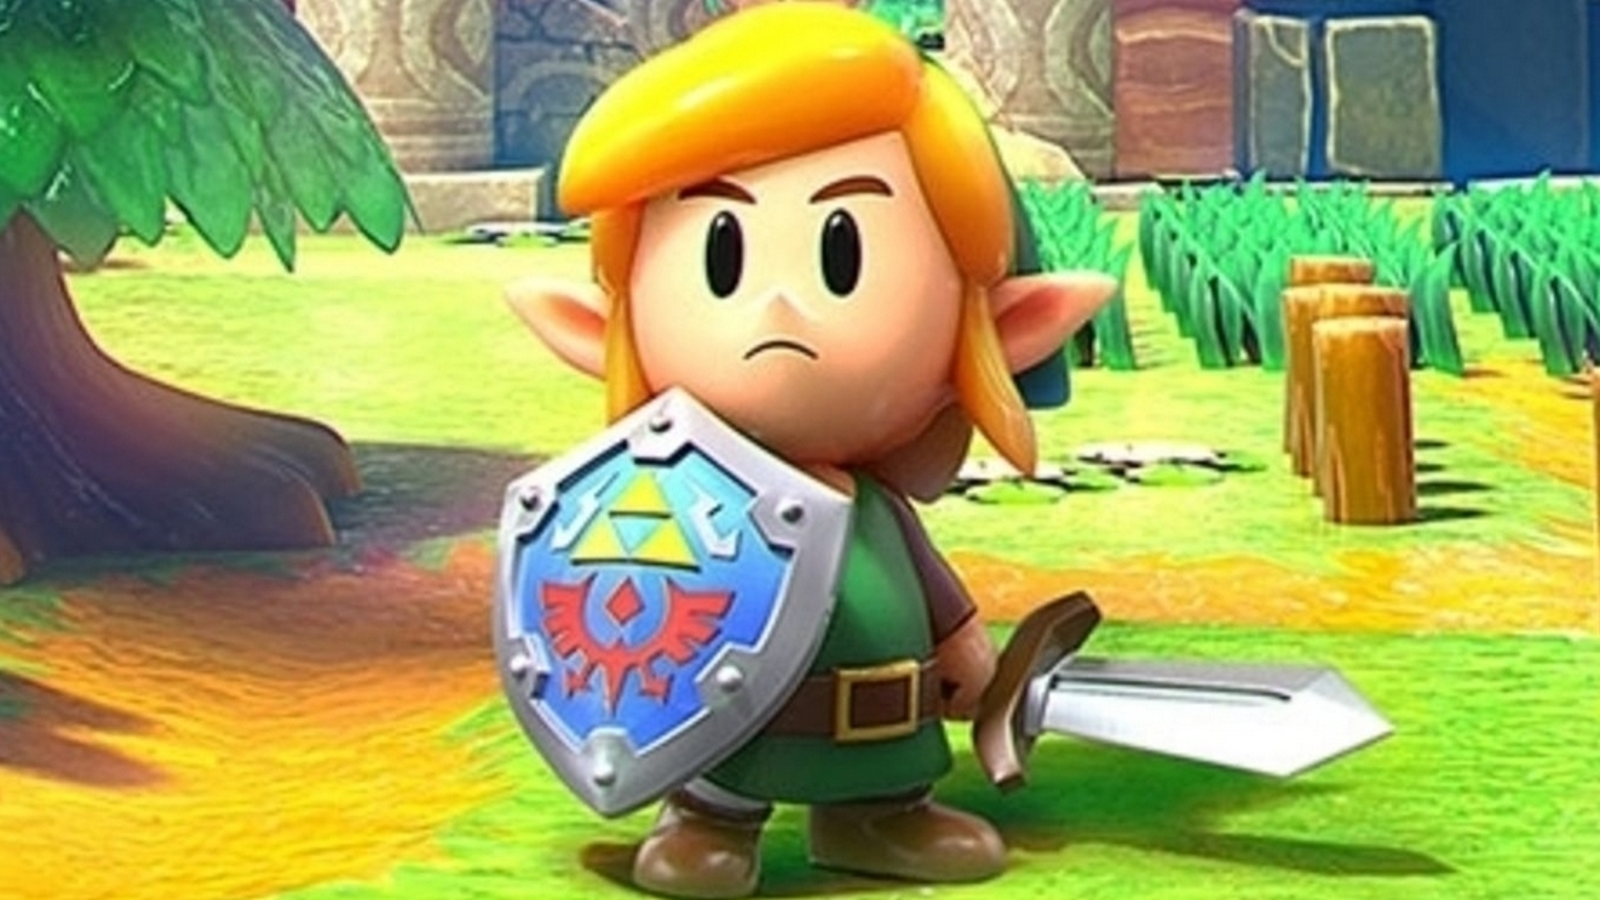 The Legend of Zelda: Link's Awakening Walkthrough - The Legend of Zelda:  Link's Awakening Guide - IGN